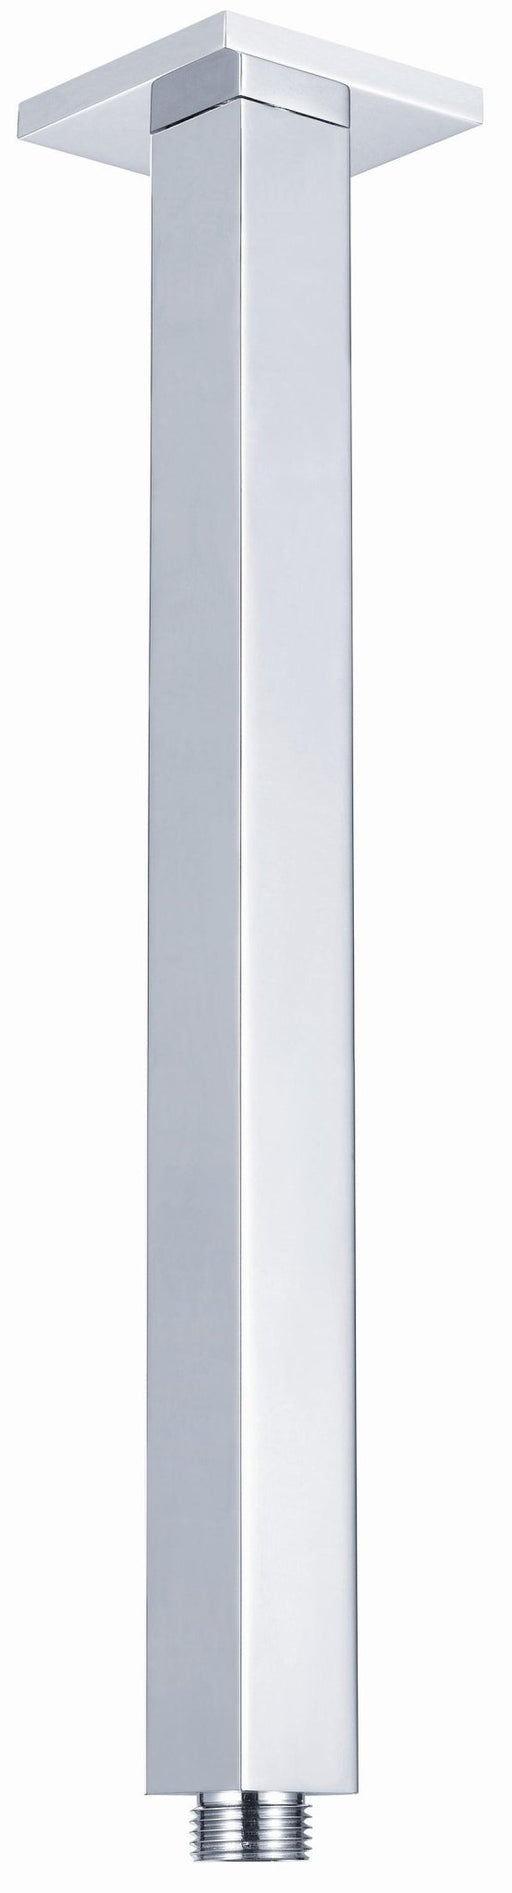 Luxury Square Ceiling Arm - Ideal Bathroom CentreSA-C-S200/300/450